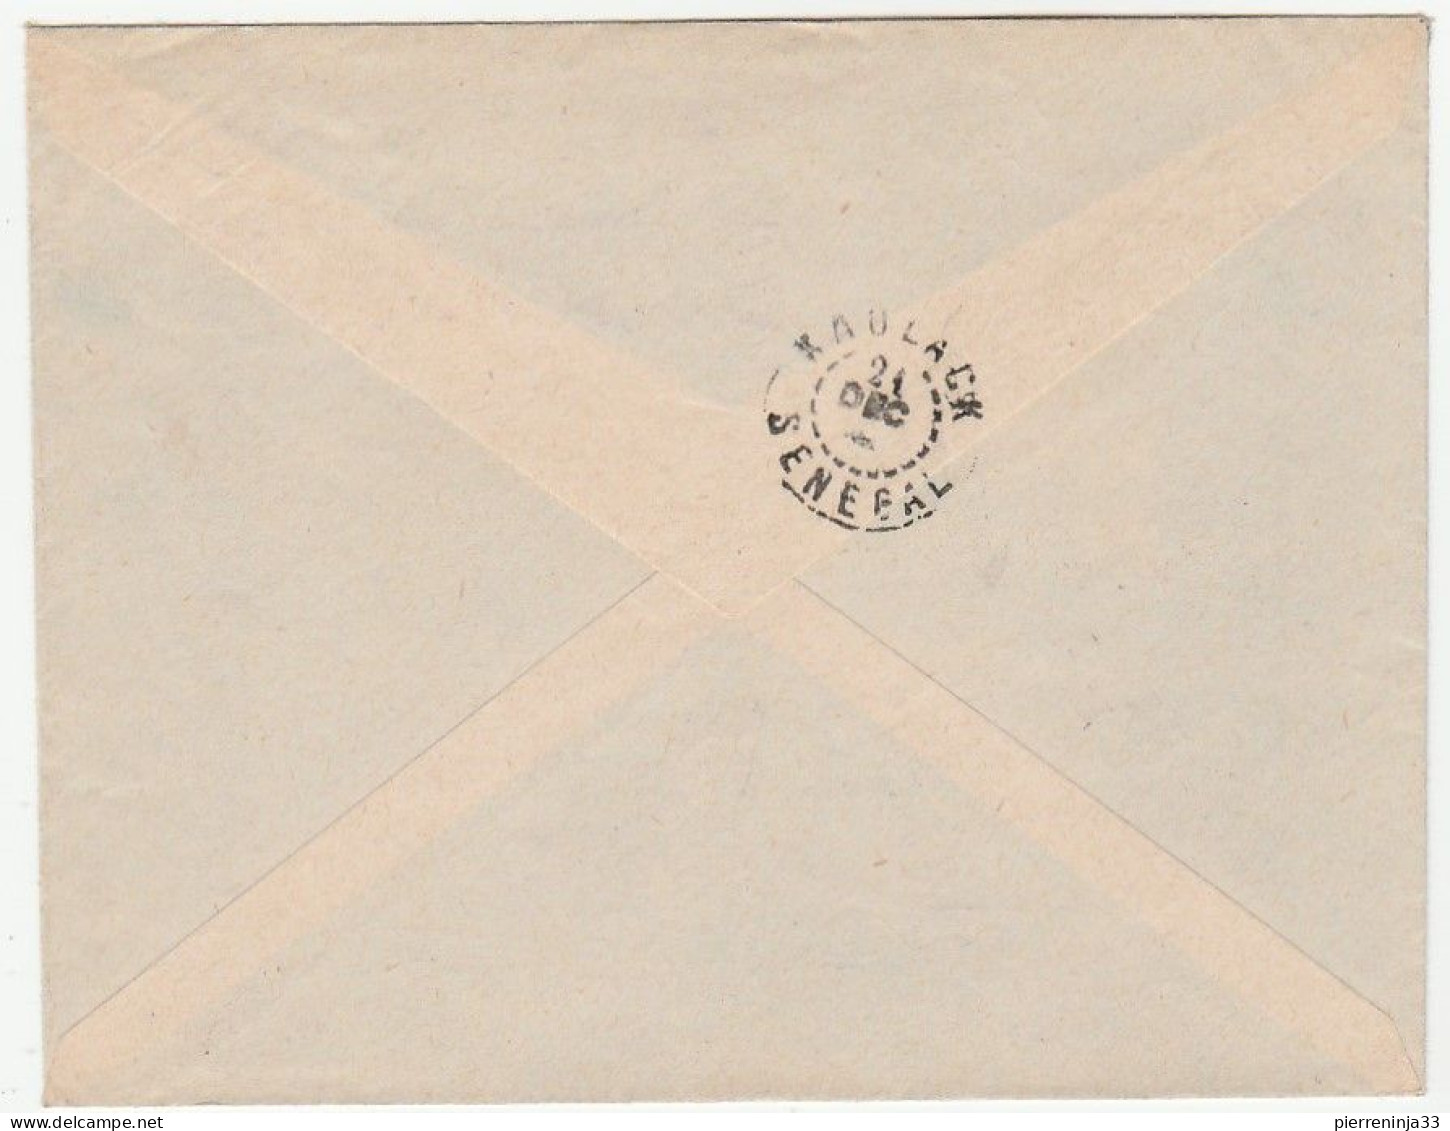 Lettre Avec Cachet Illustrée Croix De Lorraine 2ème Division Blindée, Journées Leclerc, Alger, 1948 - Lettres & Documents